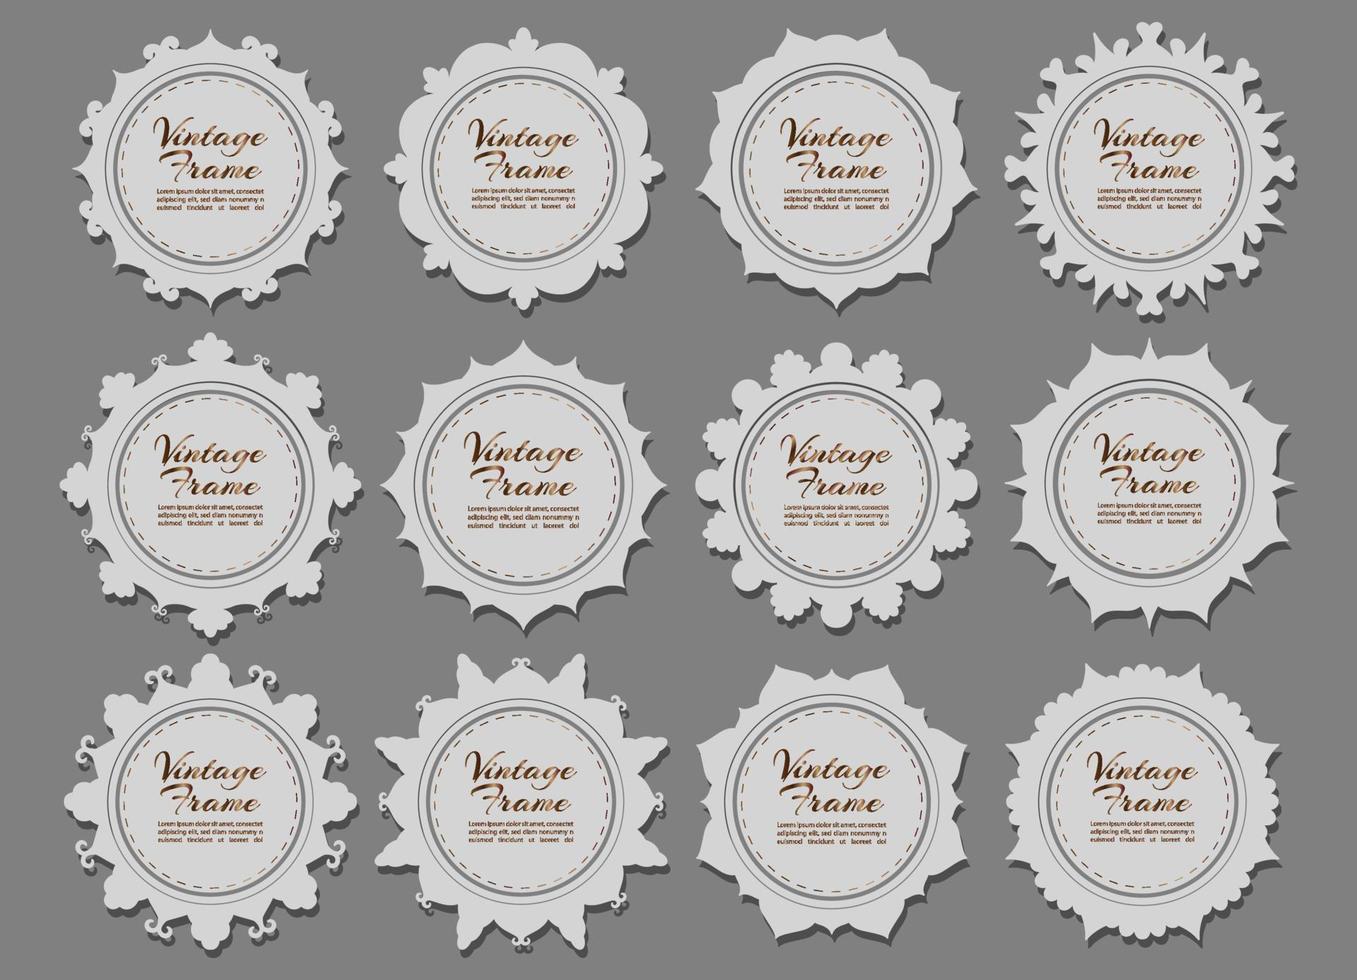 Decorative label frames. Vintage ornate labels sale stickers Vector symbol set